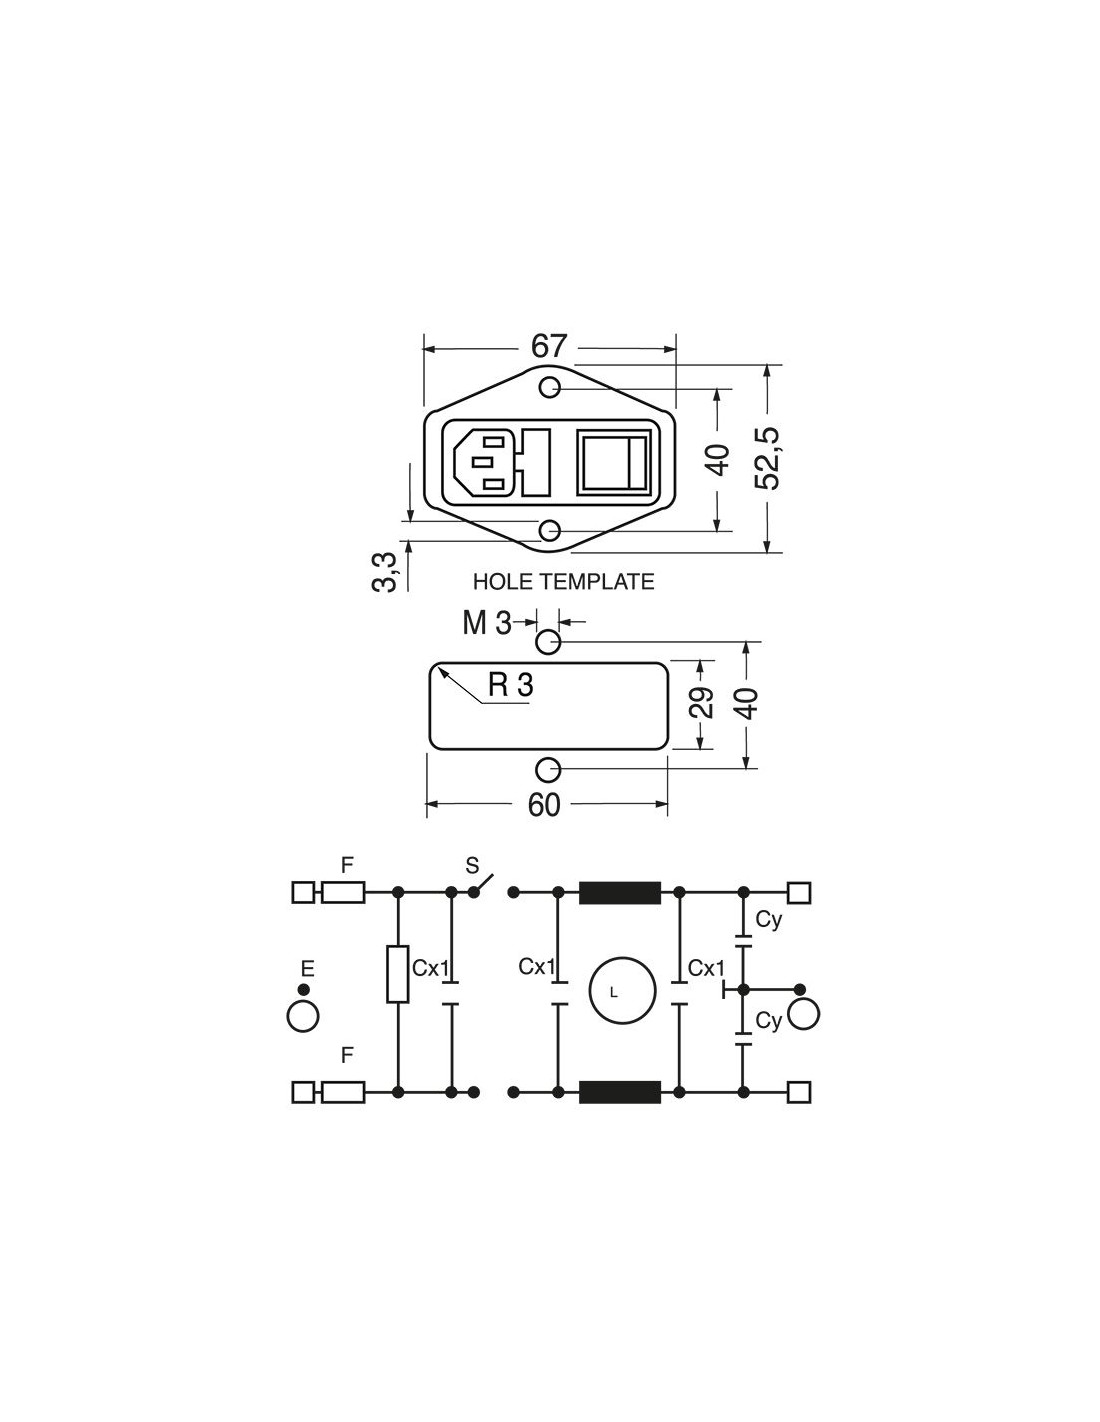 Prise C14 IEC320 avec interrupteur et fusible